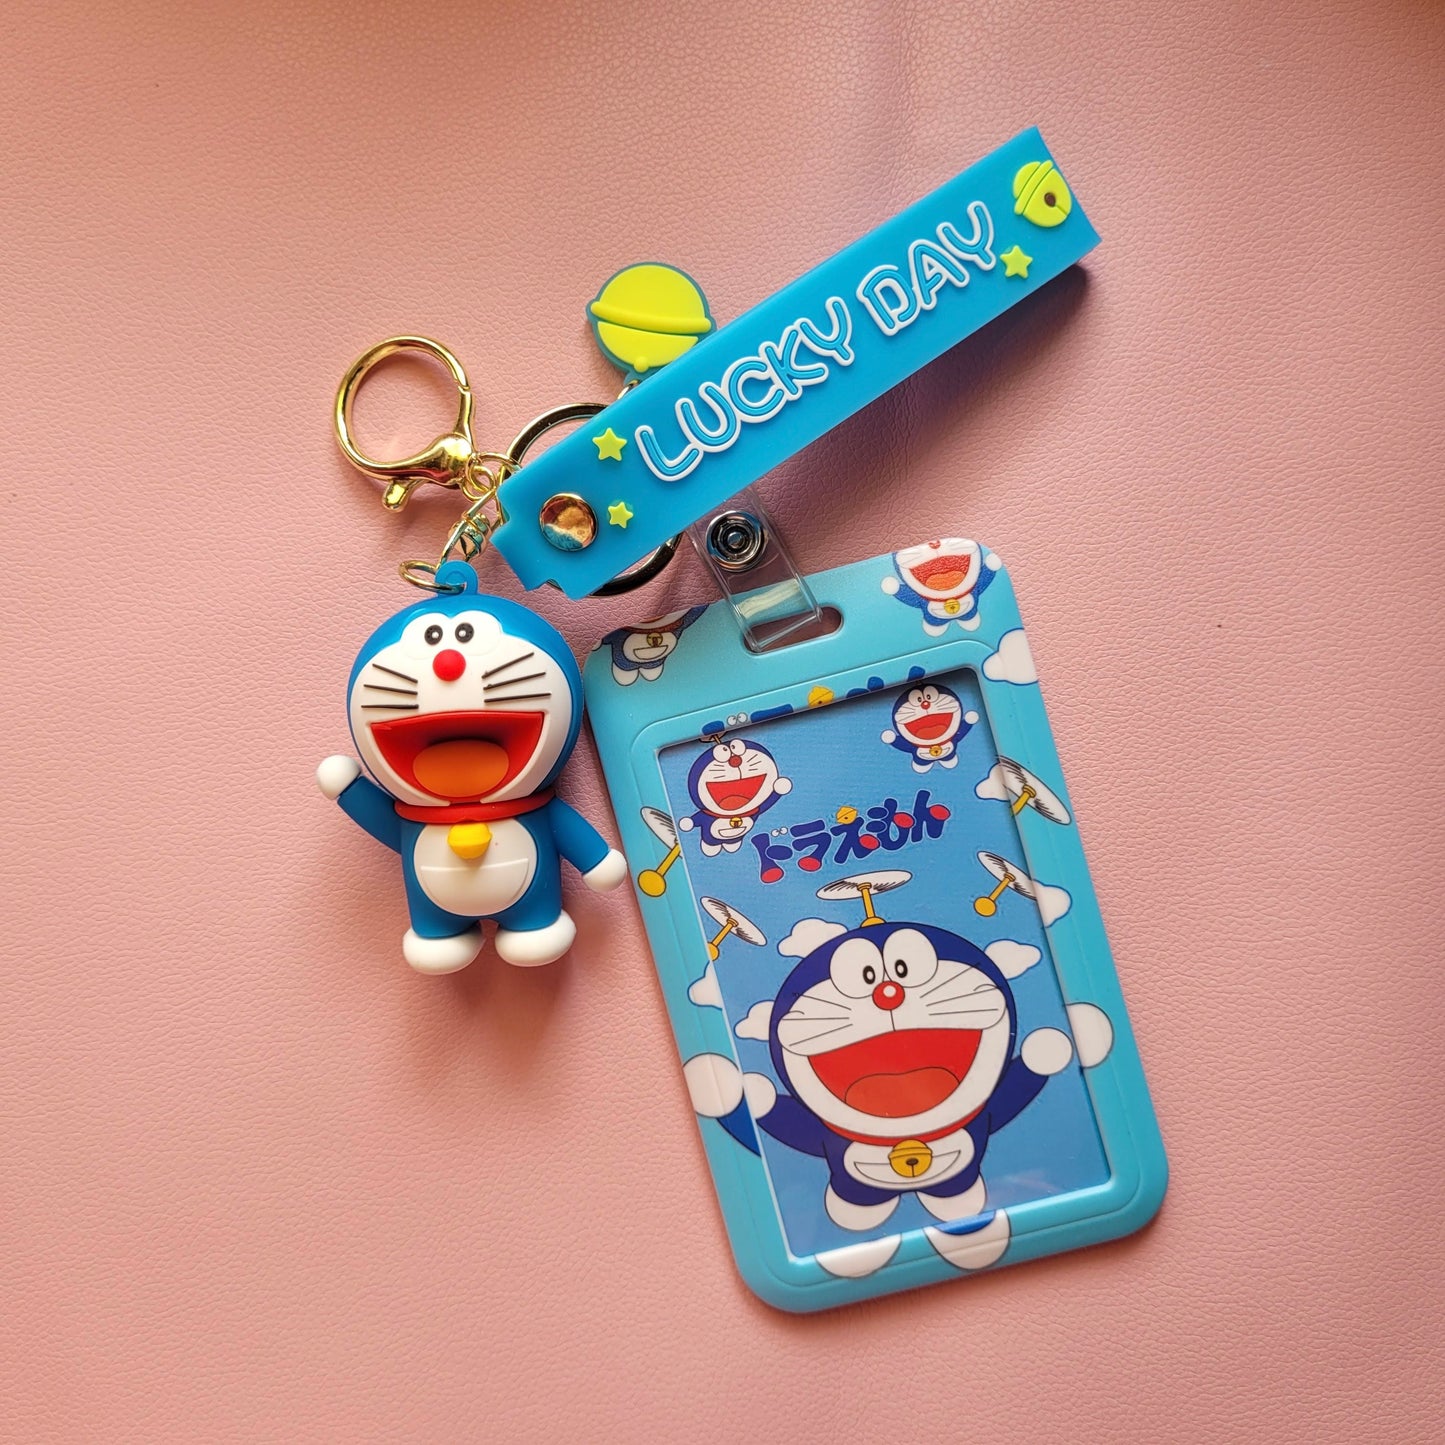 Portacarnet (lanyard) Doraemon